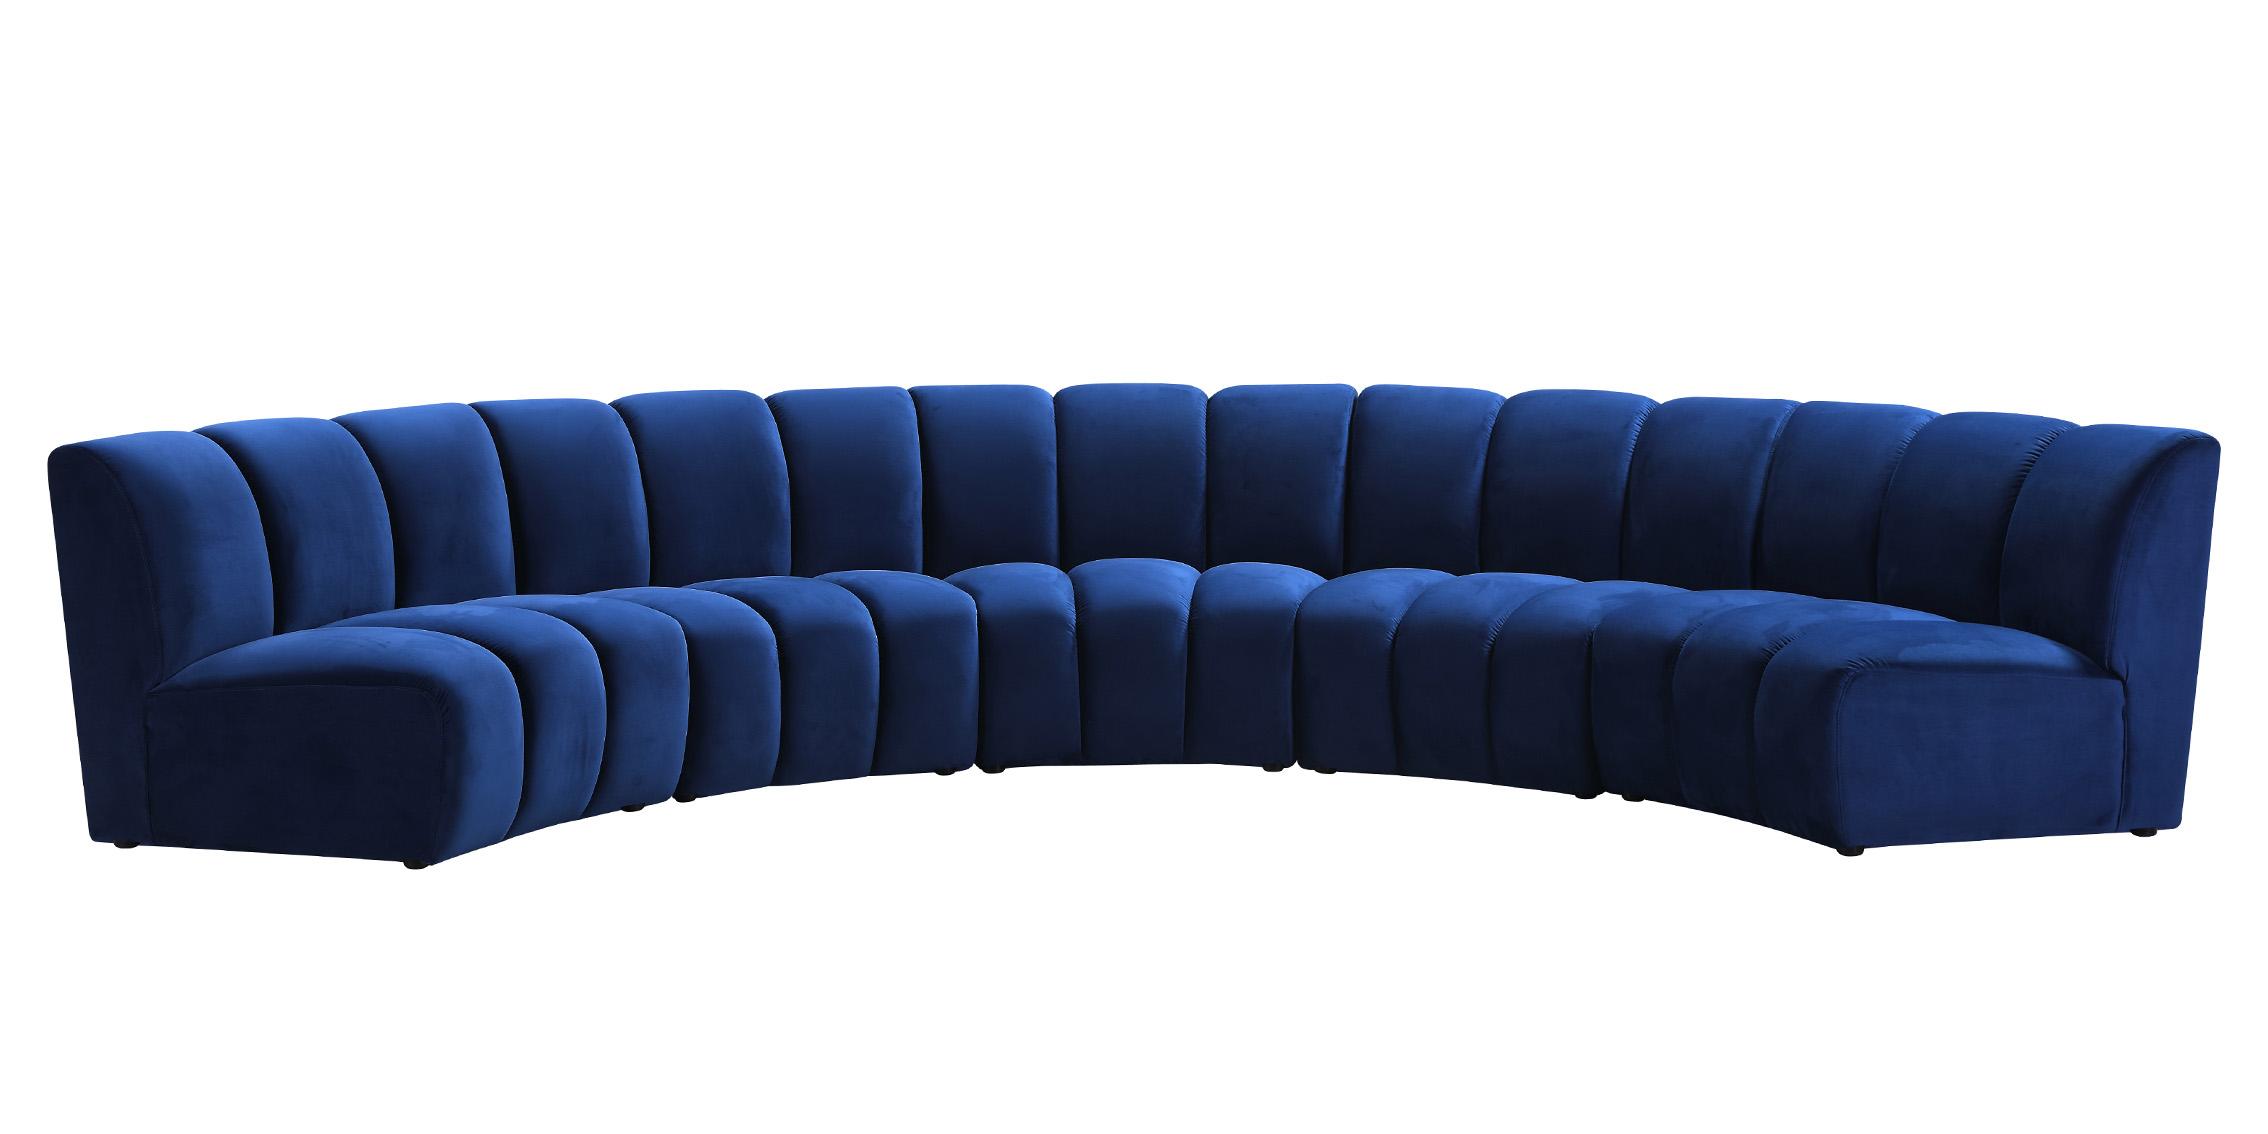 

    
638Navy-5PC Meridian Furniture Modular Sectional Sofa
